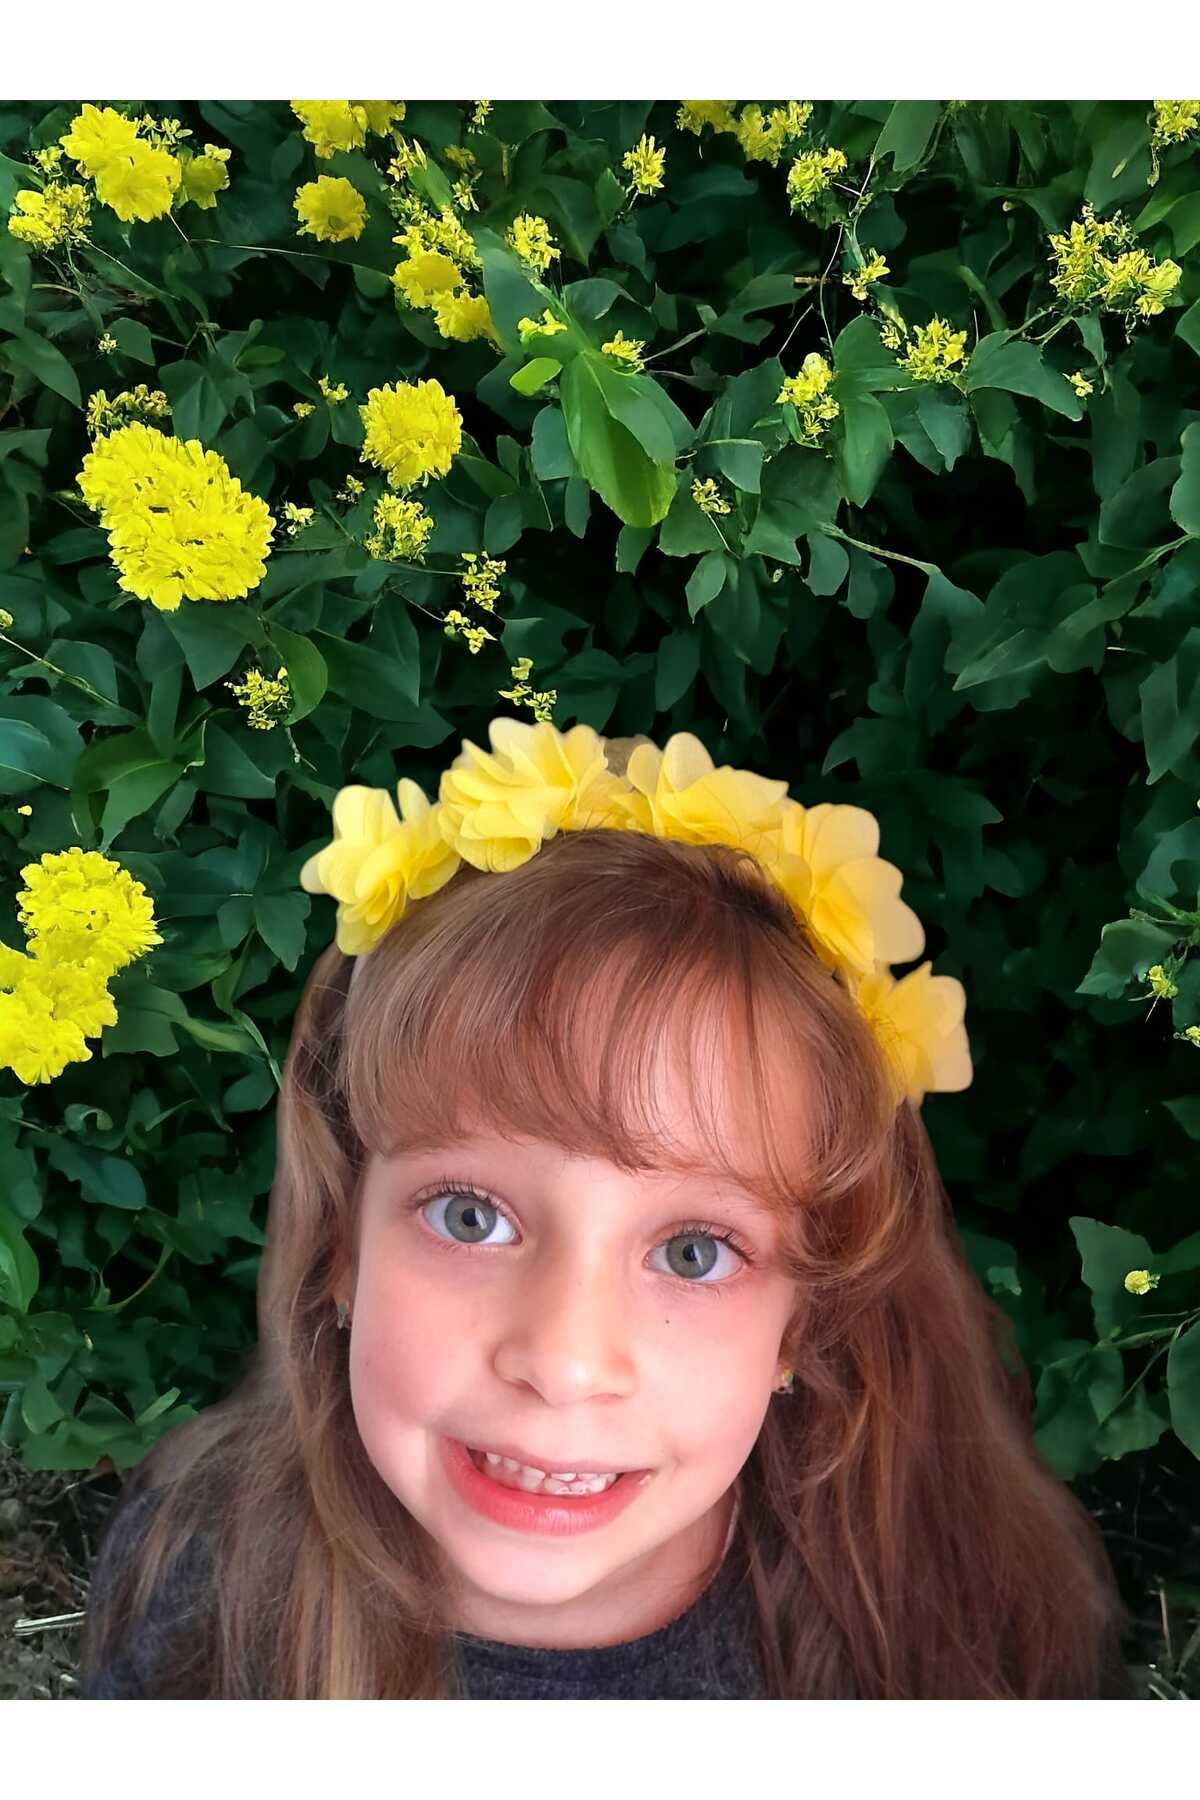 dms 10 Adet Kız çocuk sarı çiçekli taç - 23 nisan - özel günler doğum günleri için idealdir